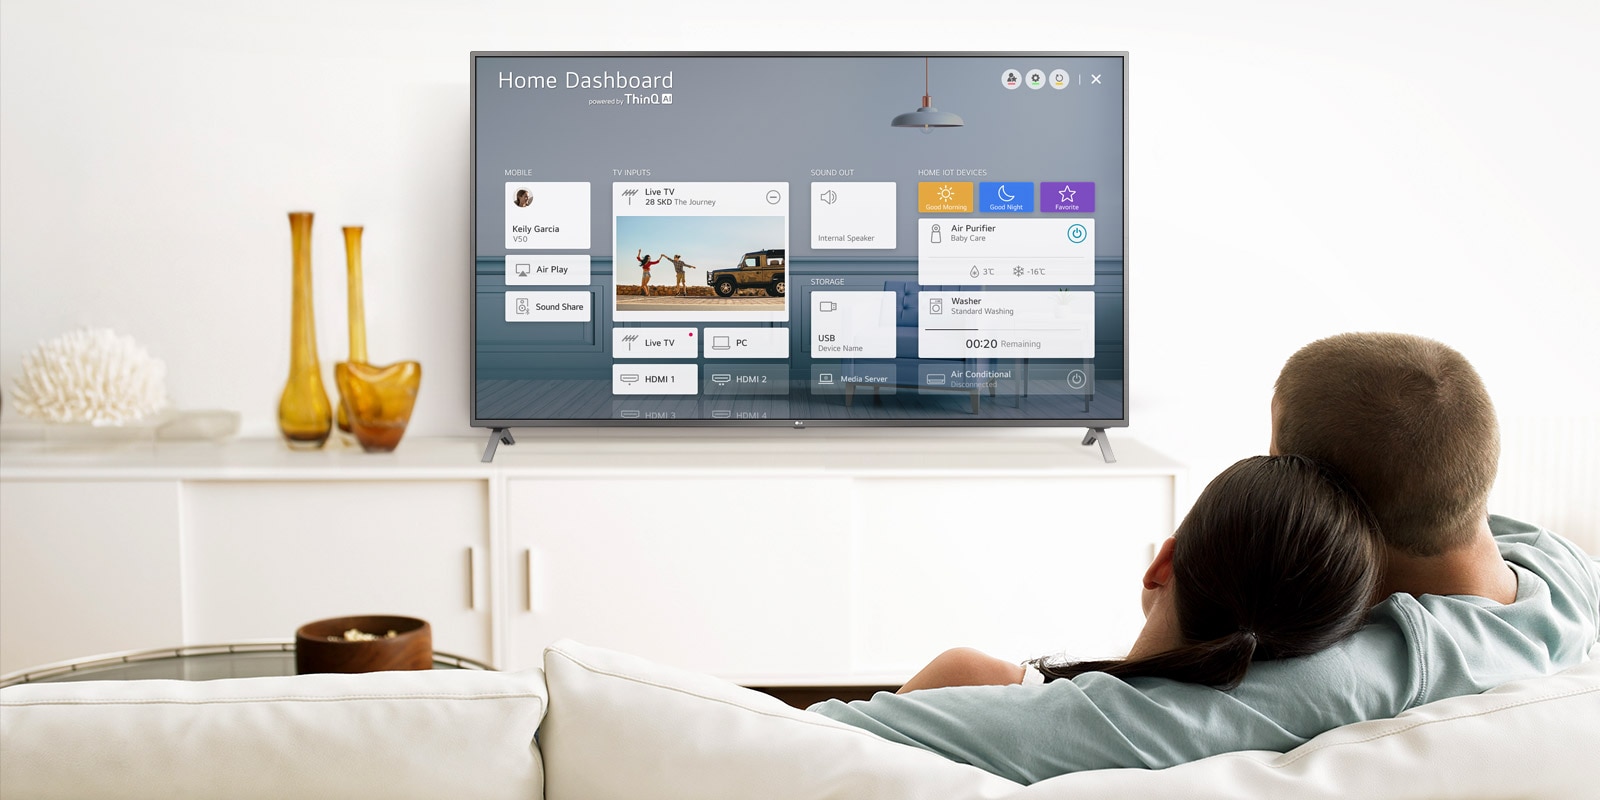 Een man en een vrouw zitten op een bank in de woonkamer met het Home Dashboard op het tv-scherm.